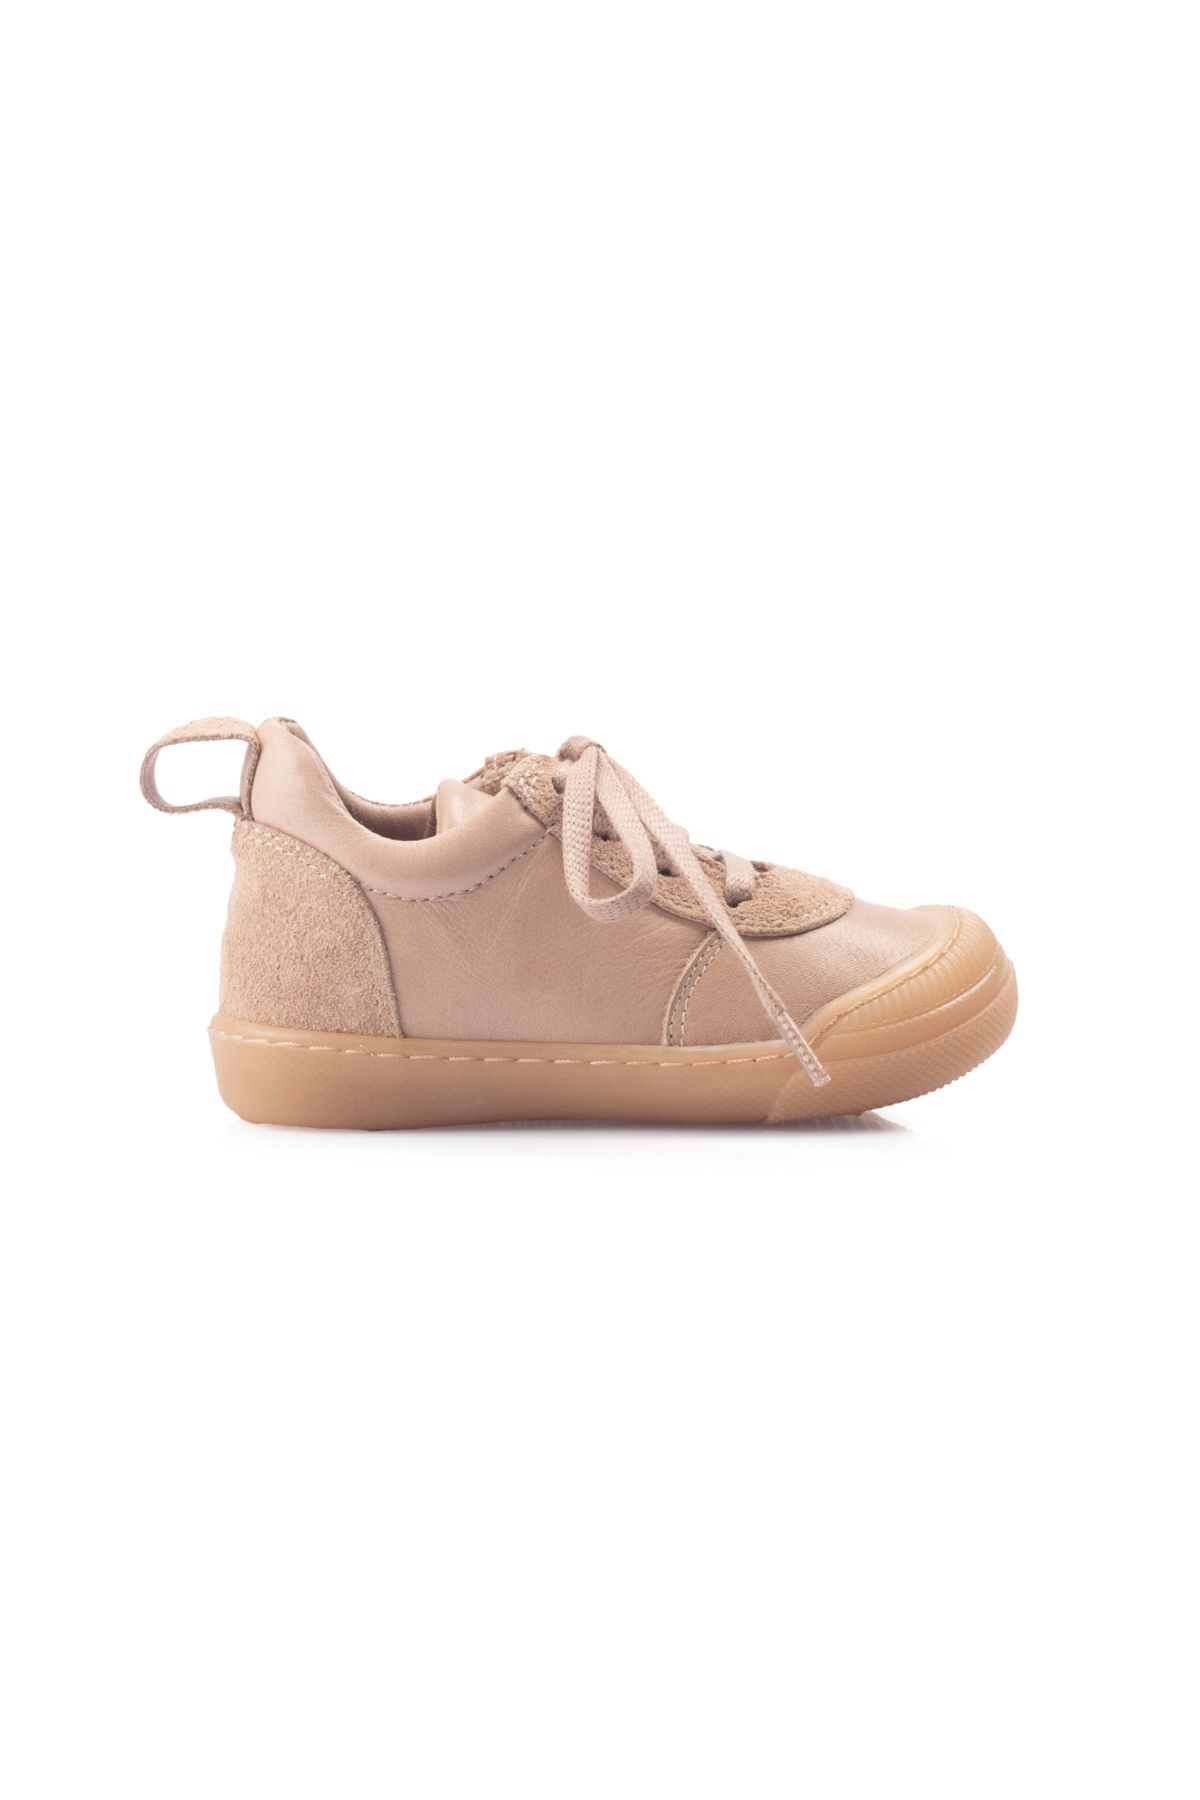 QuoQuo Speedy 2 Bağcıklı Sneaker Unisex Hakiki Deri Çocuk Ayakkabısı